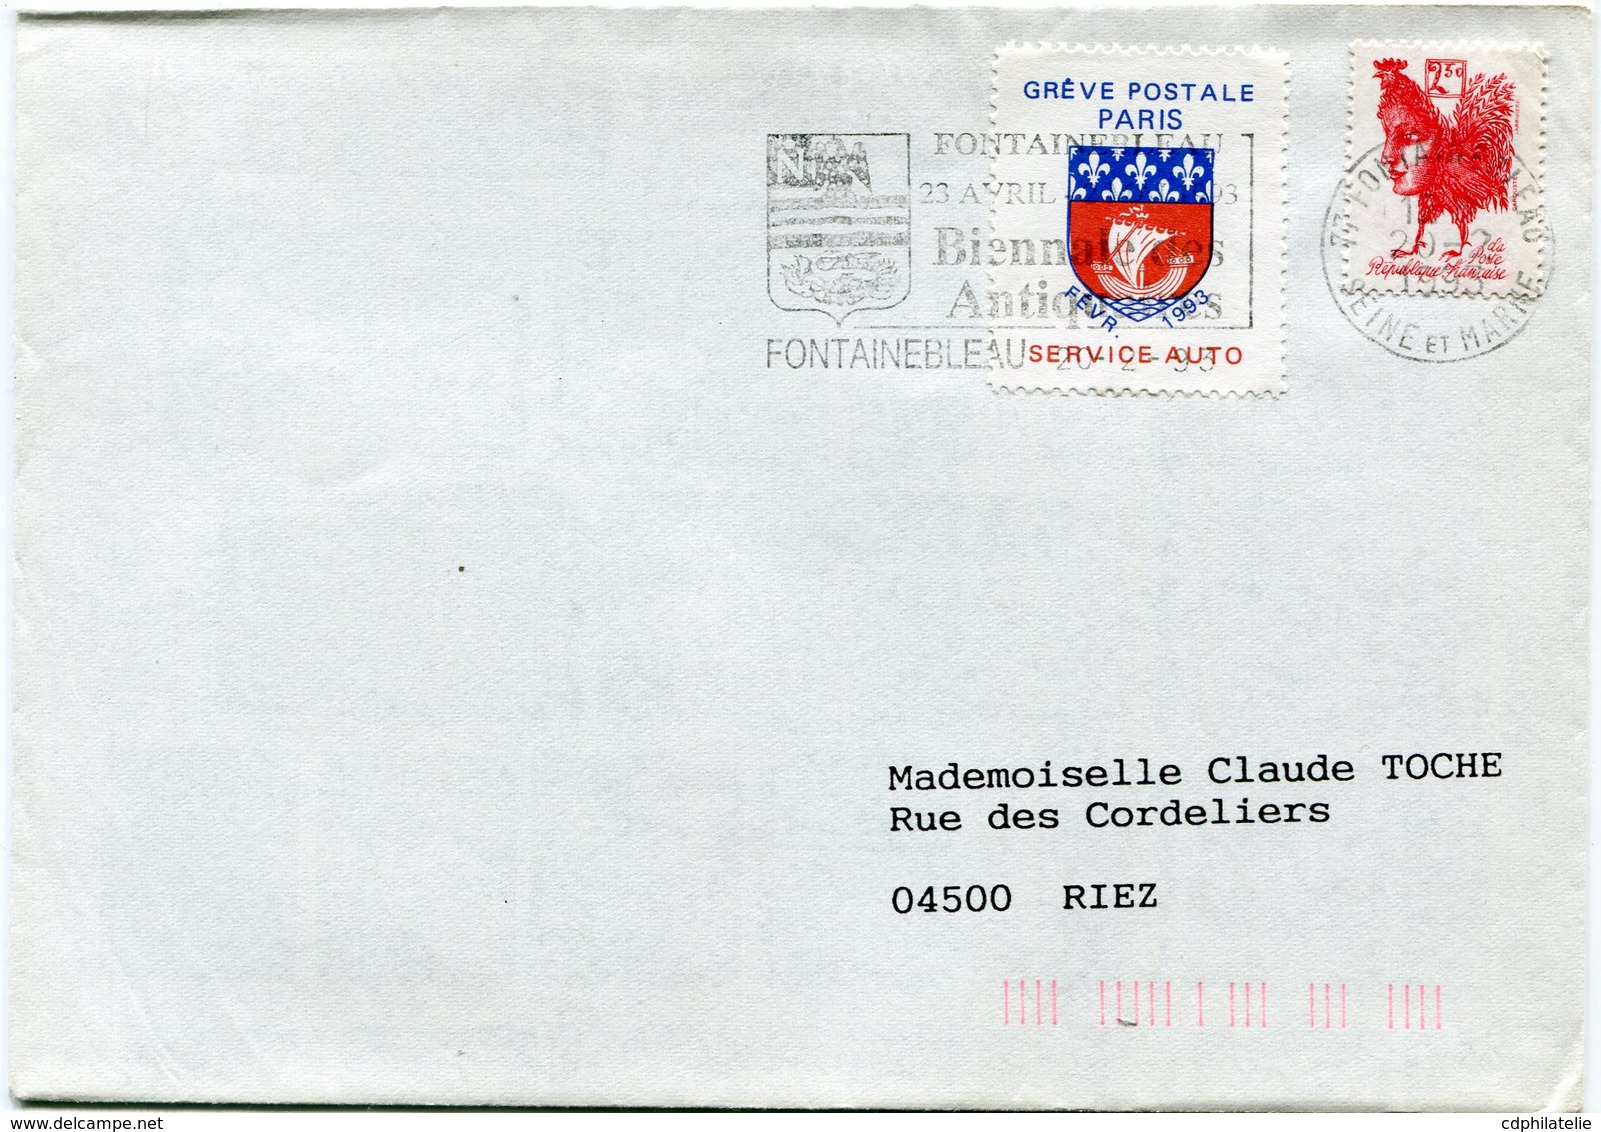 FRANCE LETTRE AFFRANCHIE TIMBRE DE GREVE "GREVE POSTALE DE PARIS FEVR. 1993 SERVICE AUTO" DEPART FONTAINEBLEAU 20-2-1993 - Documents